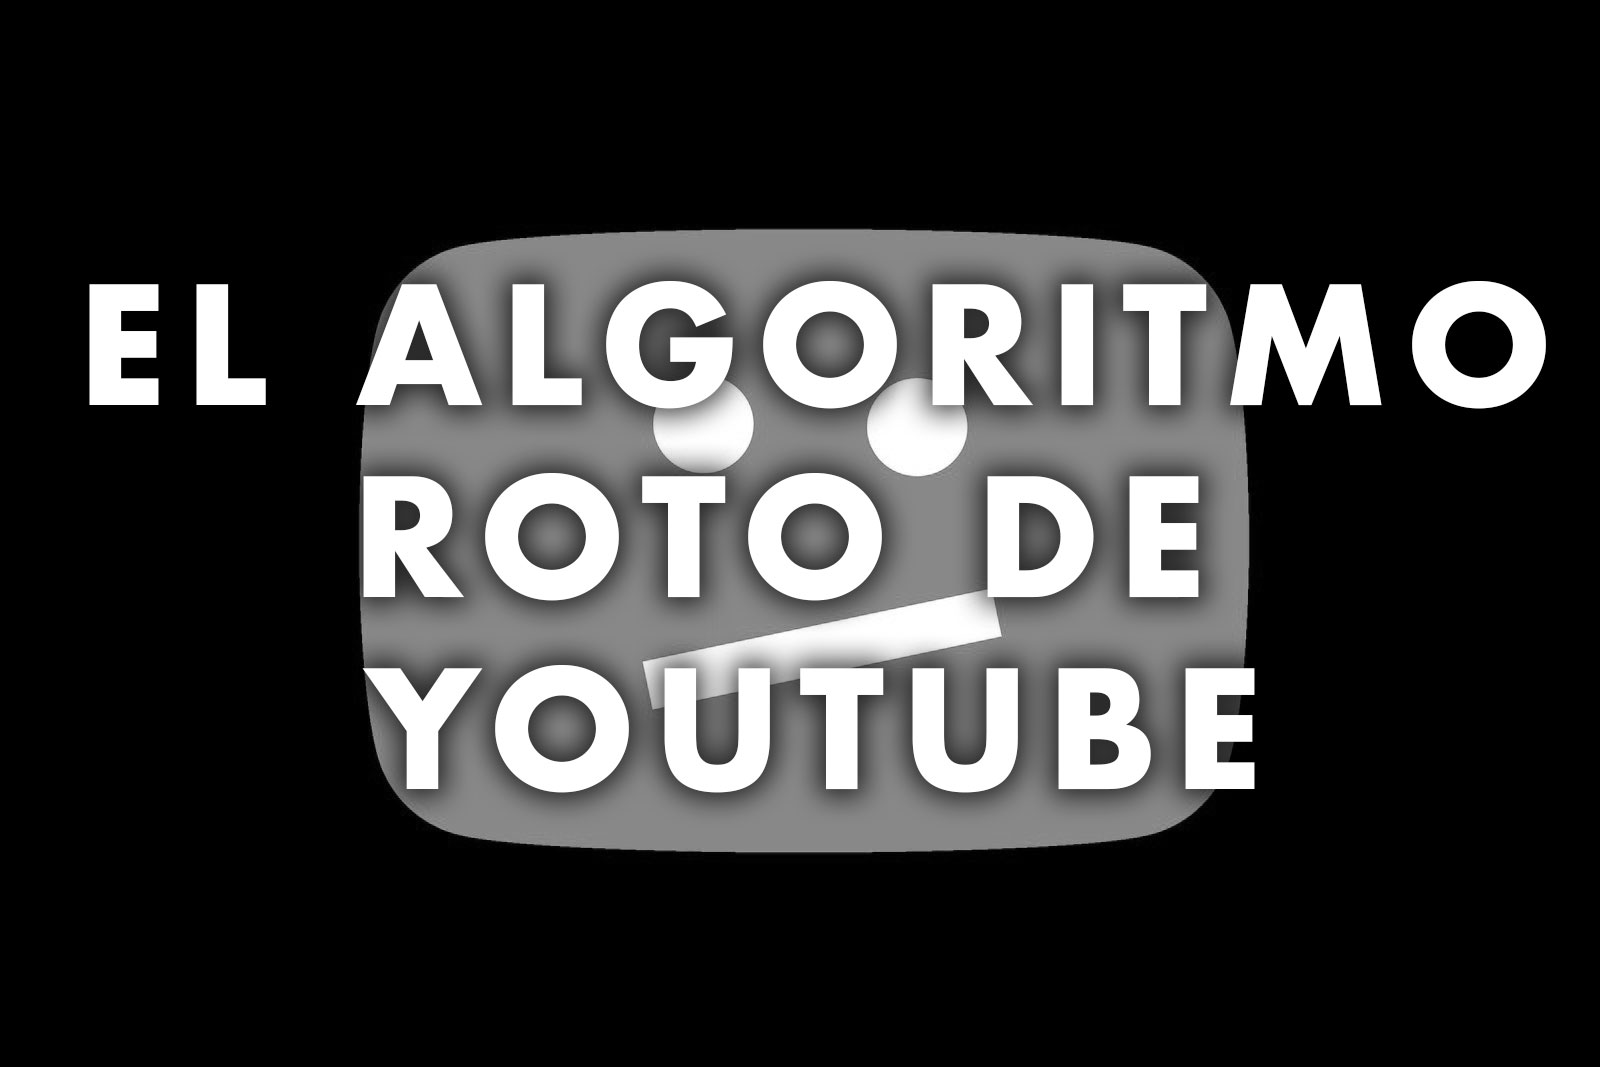 El Algoritmo roto de YouTube.